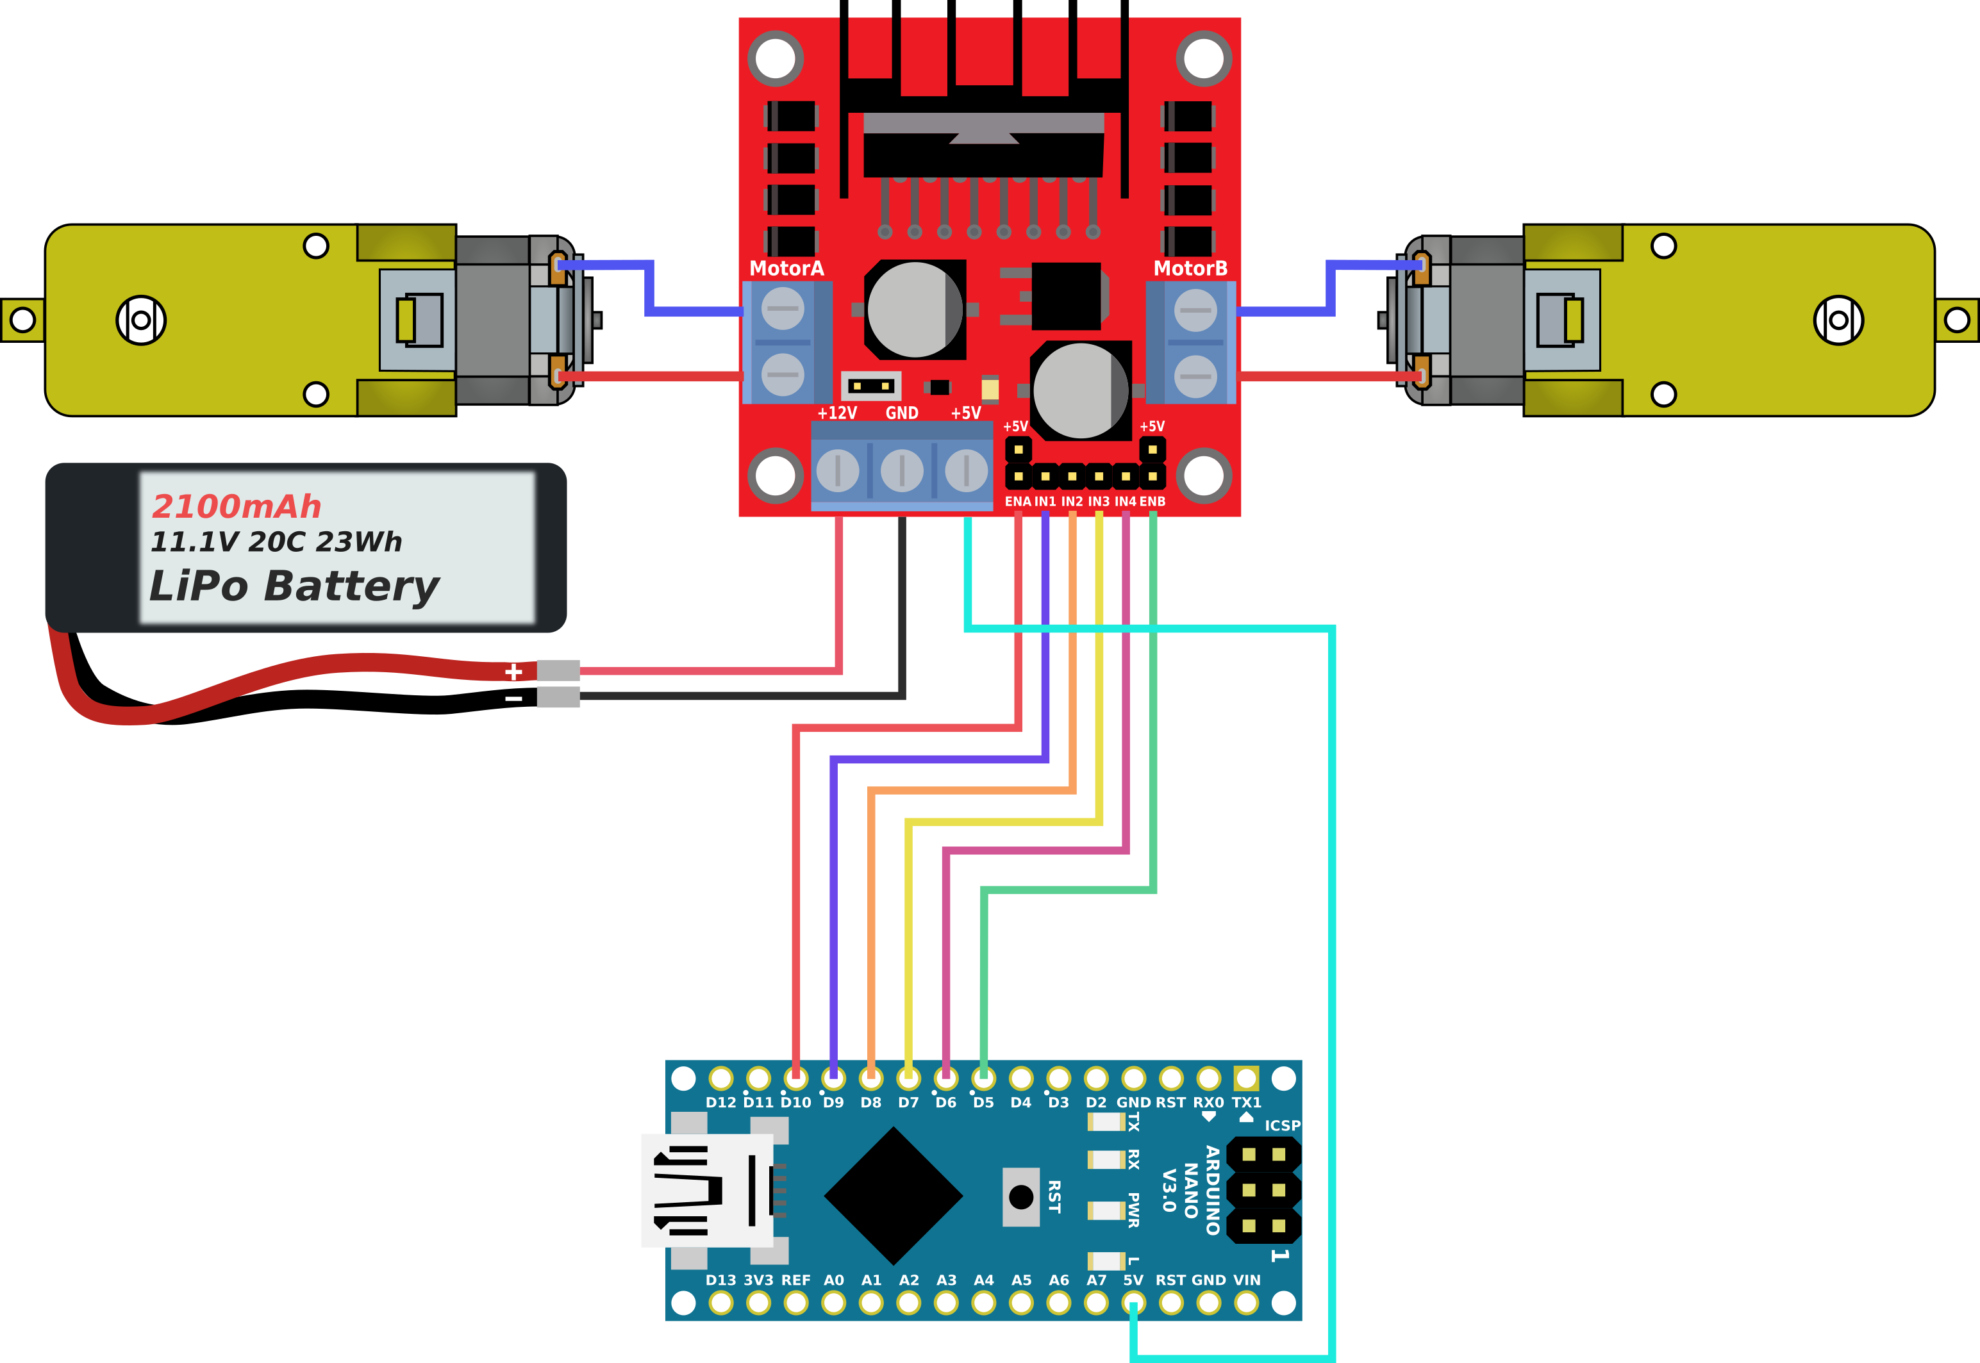 Bluetooth машинка на arduino с двумя моторами: скетч и описание